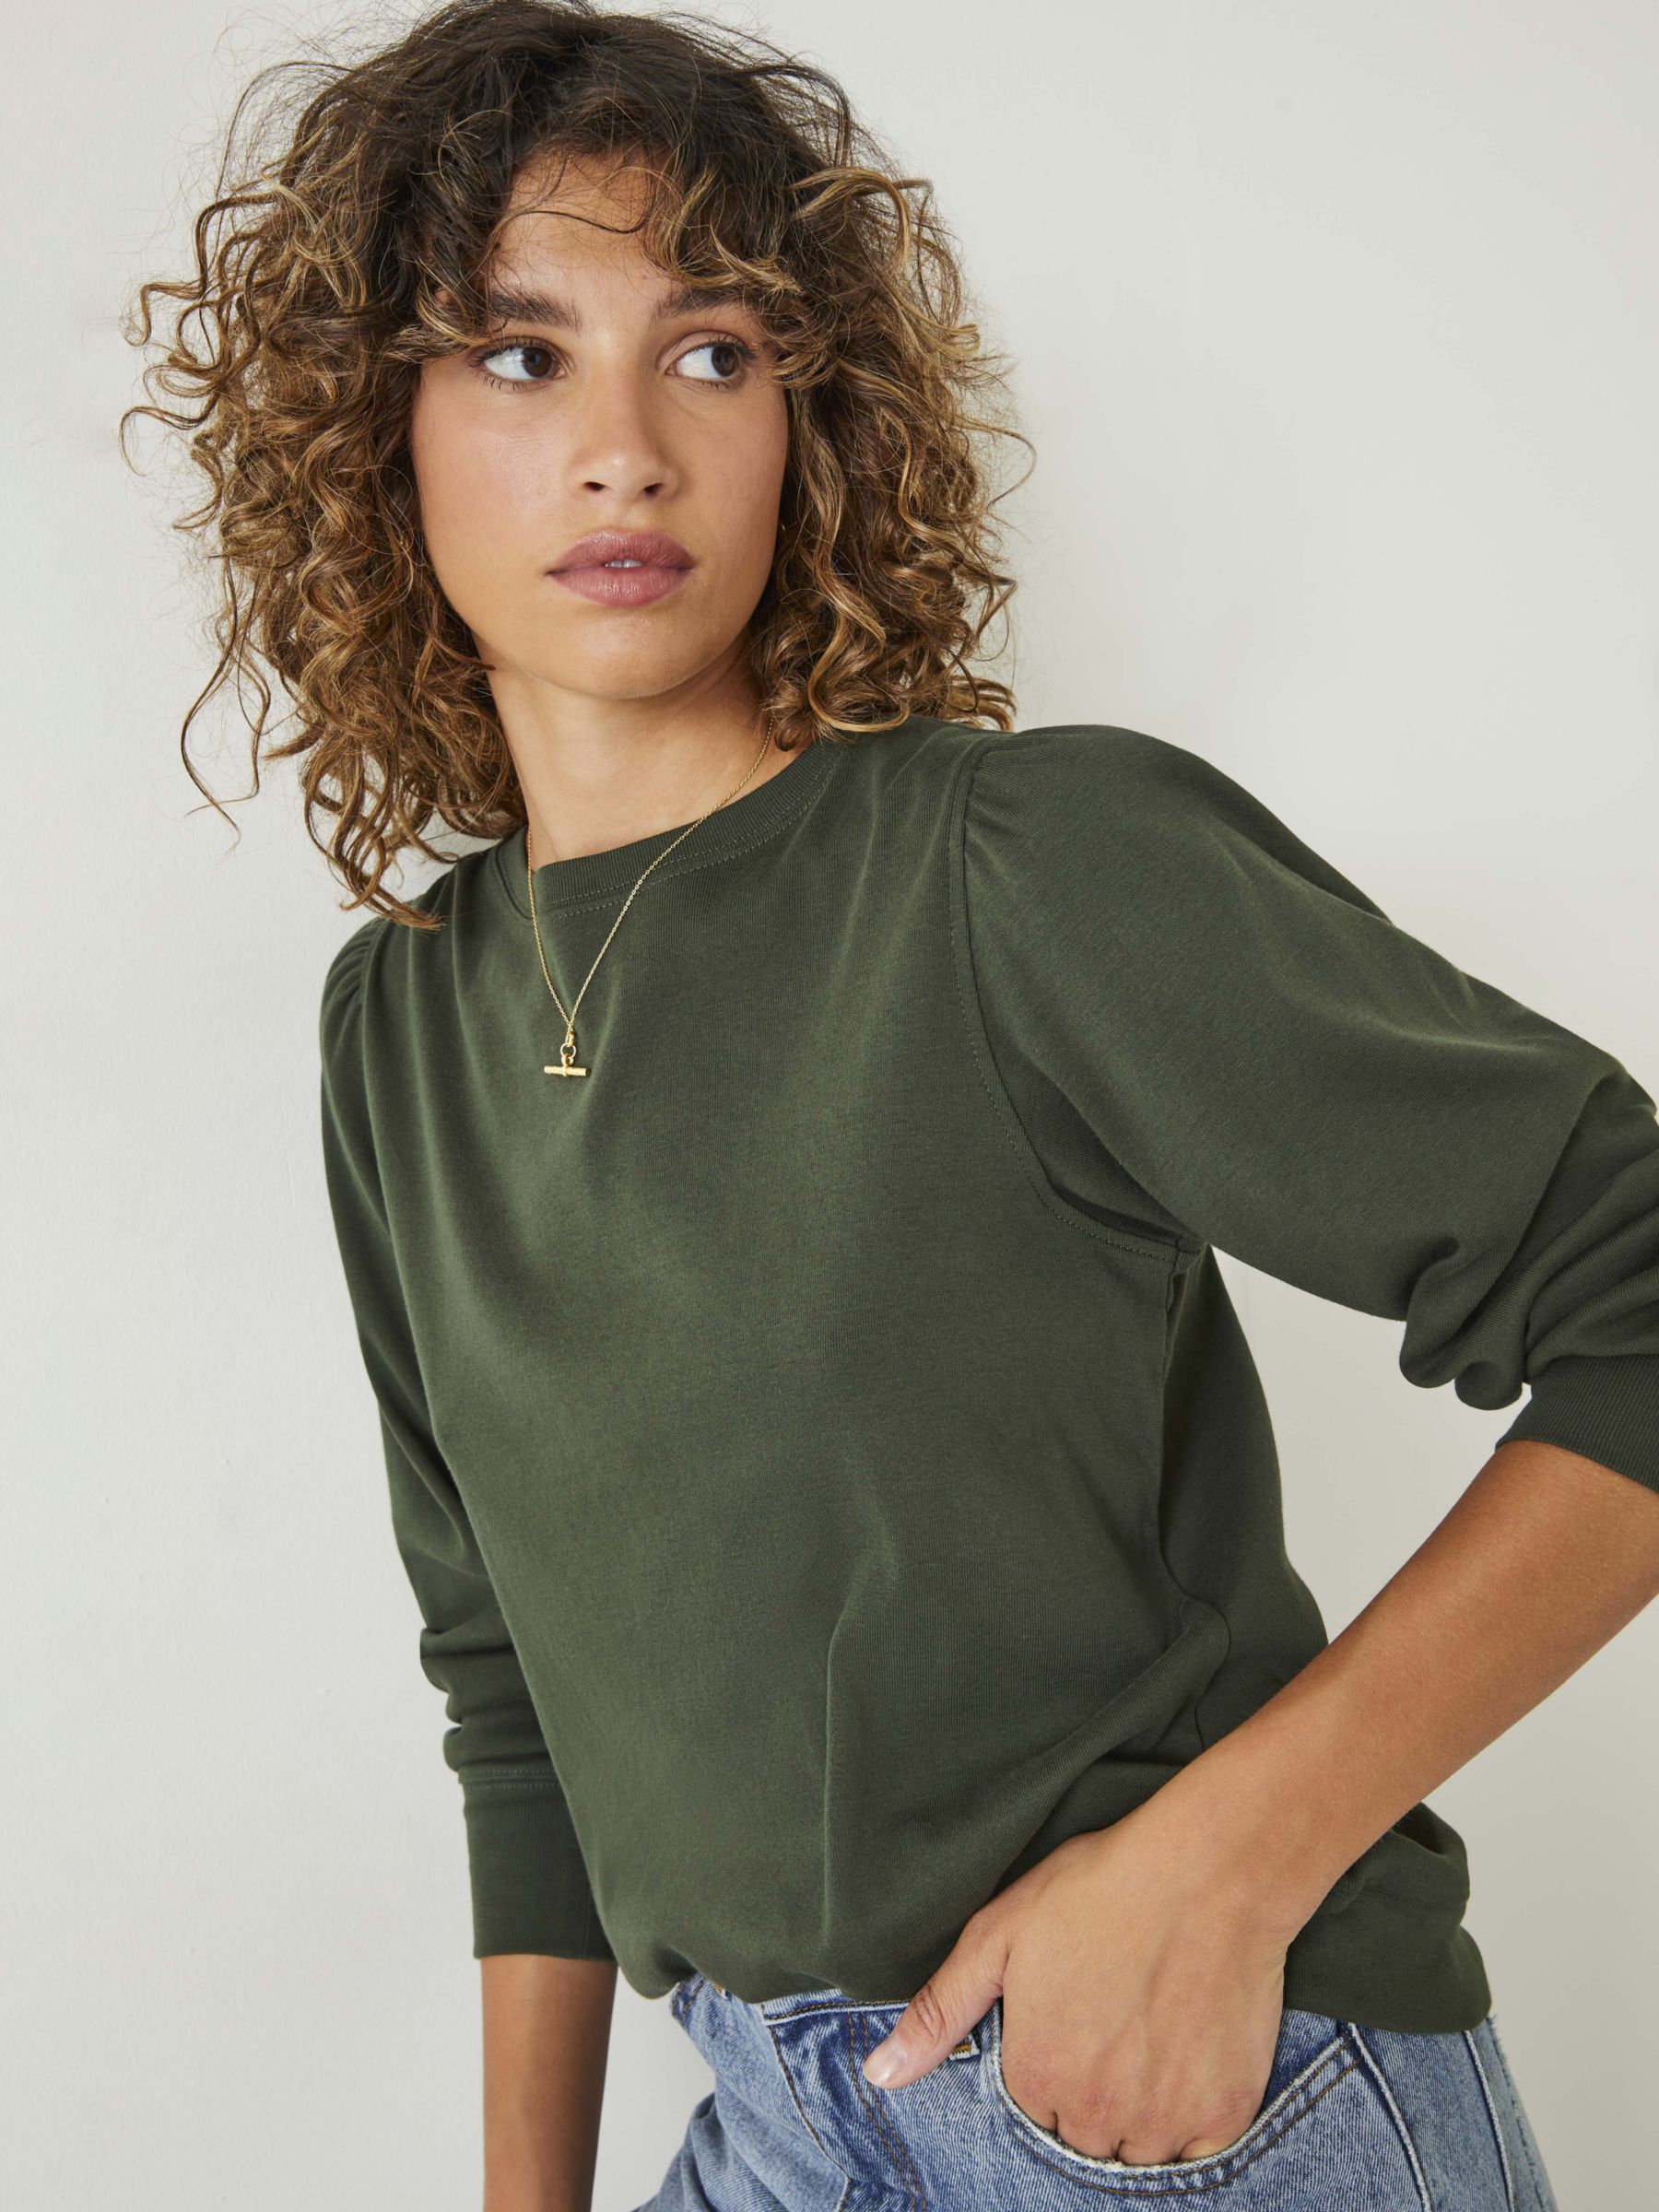 Women's Green Long Sleeve Shirts